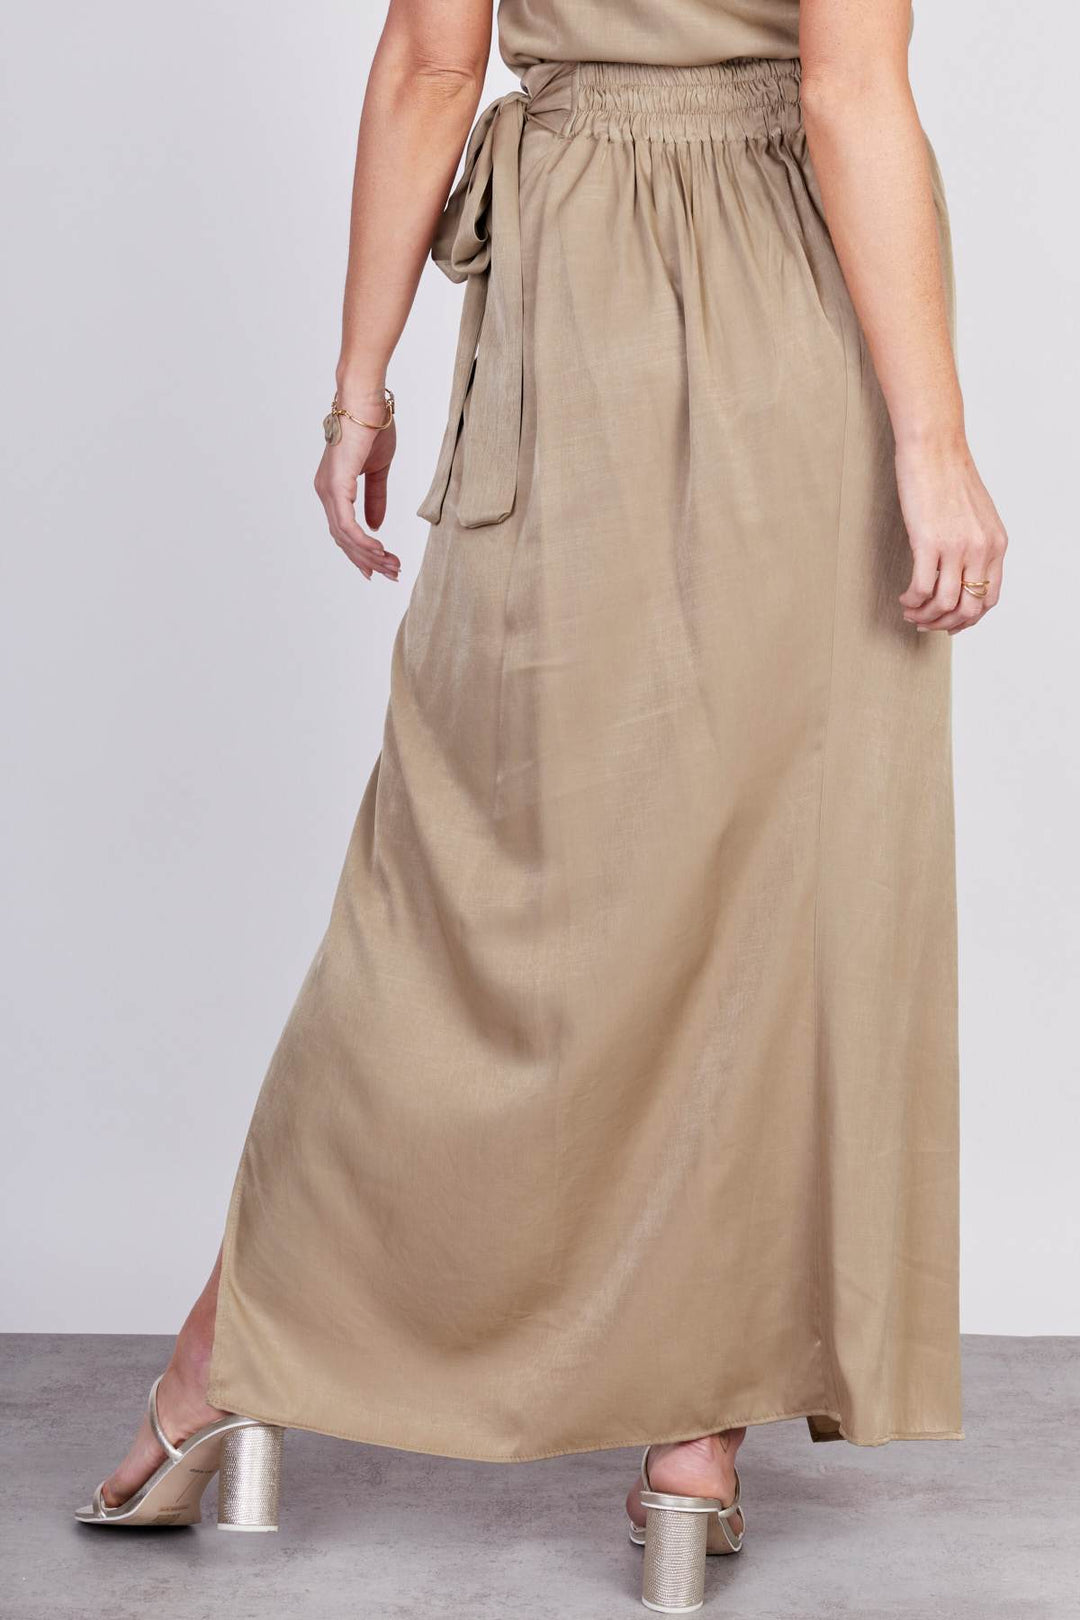 בירוק SILKY חצאית - Neta Efrati